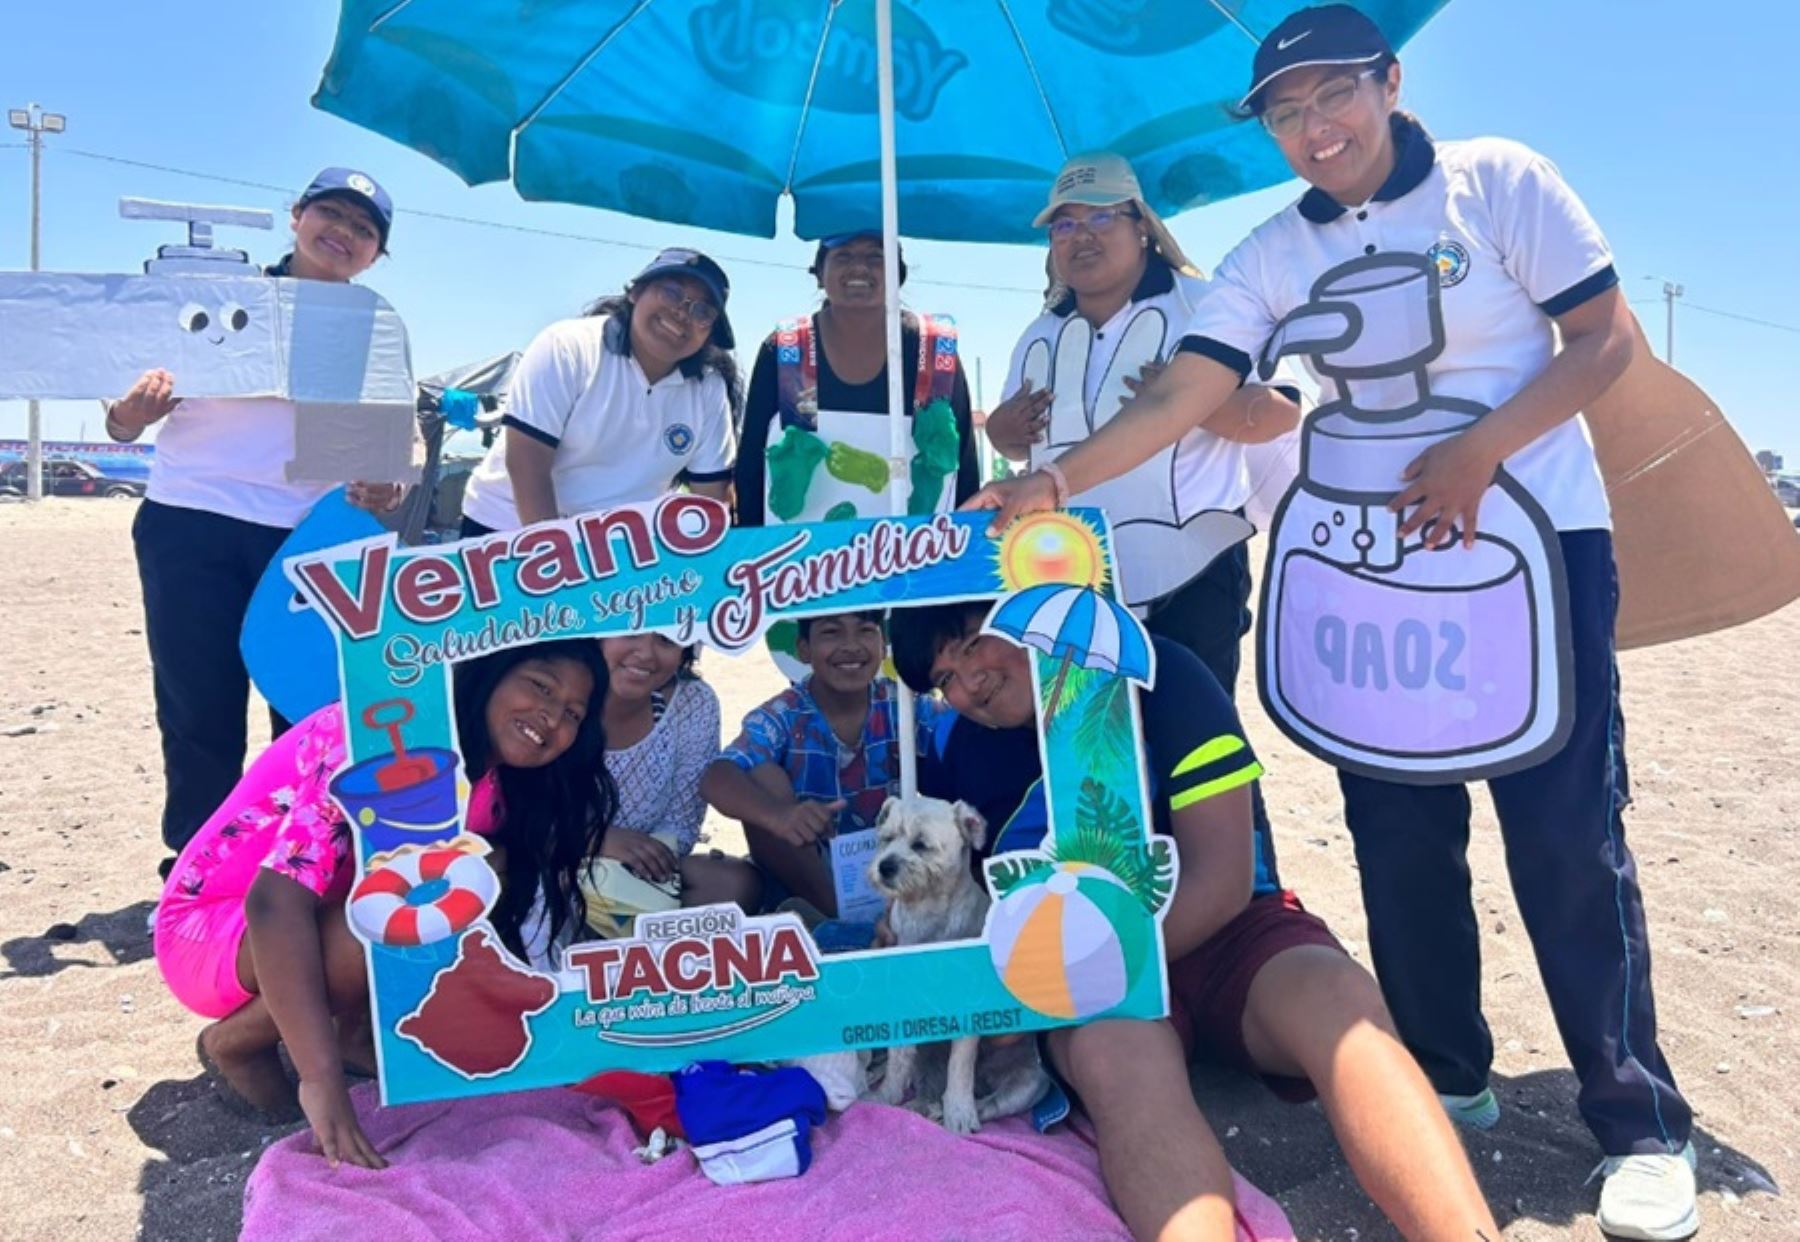 El Gobierno Regional de Tacna, a través de la Dirección Regional de Salud y en coordinación con ocho instituciones públicas y privadas, lanzó hoy la campaña “Verano saludable, seguro y familiar”, cuyo objetivo es brindar atención médica a las personas que acuden a las diferentes playas del litoral tacneño.